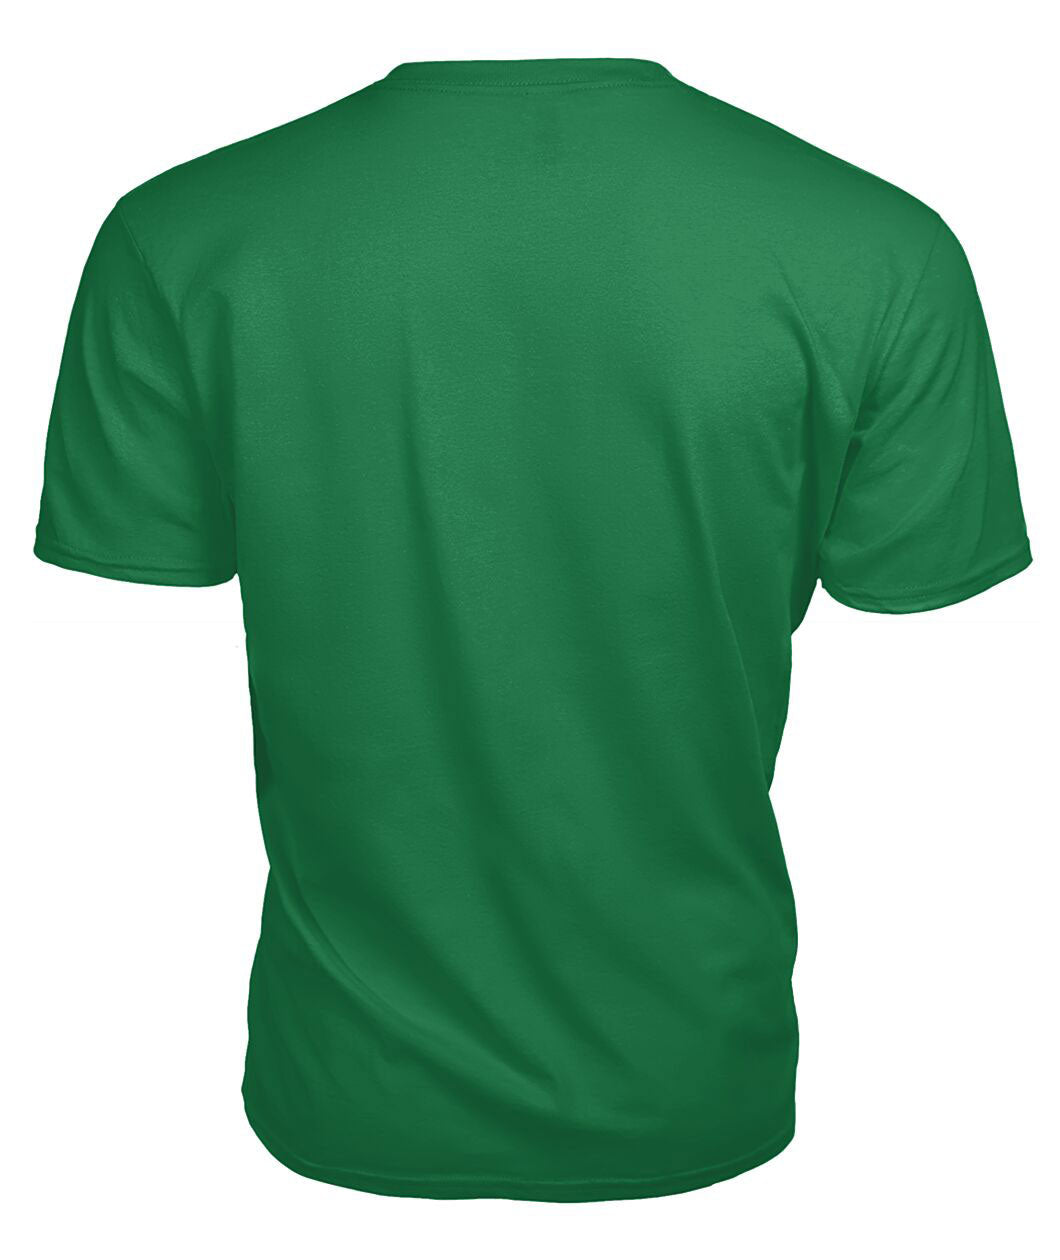 Fullerton Tartan Crest 2D T-shirt - Blood Runs Through My Veins Style